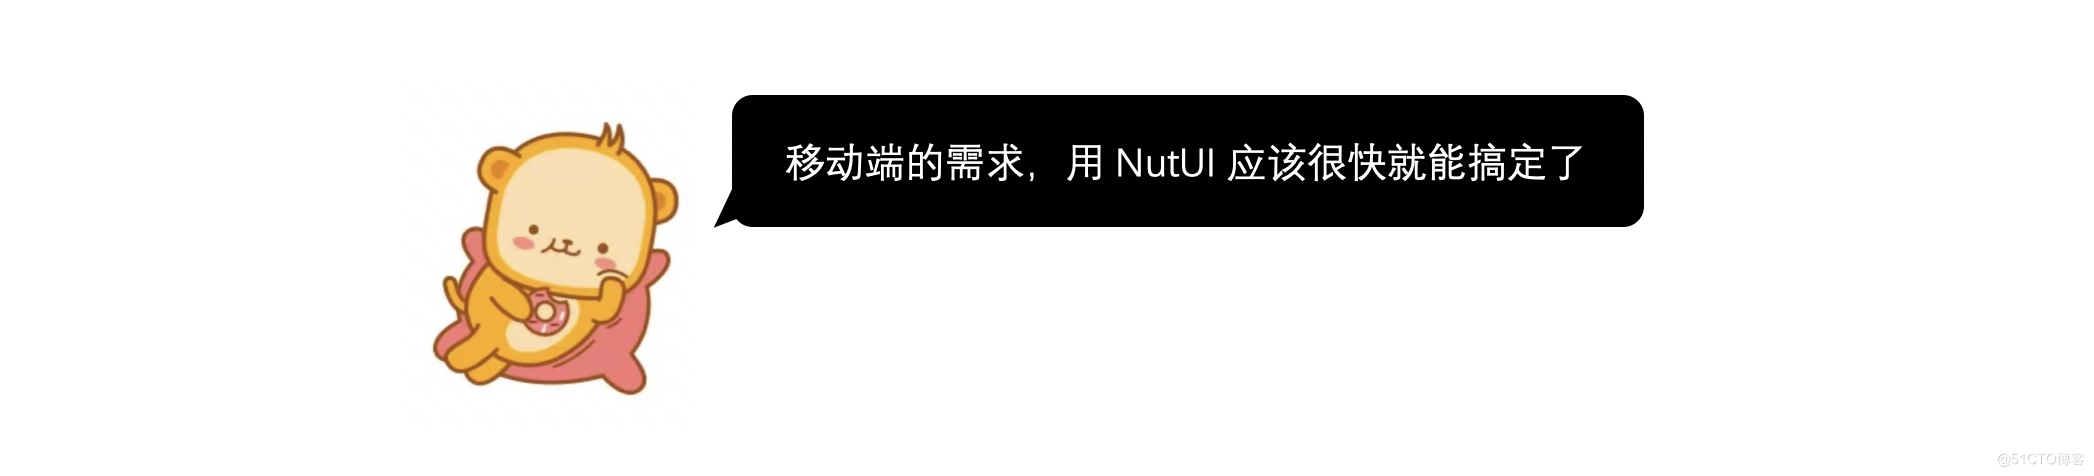 金先生的 NutUI3 初体验_NutUI_03